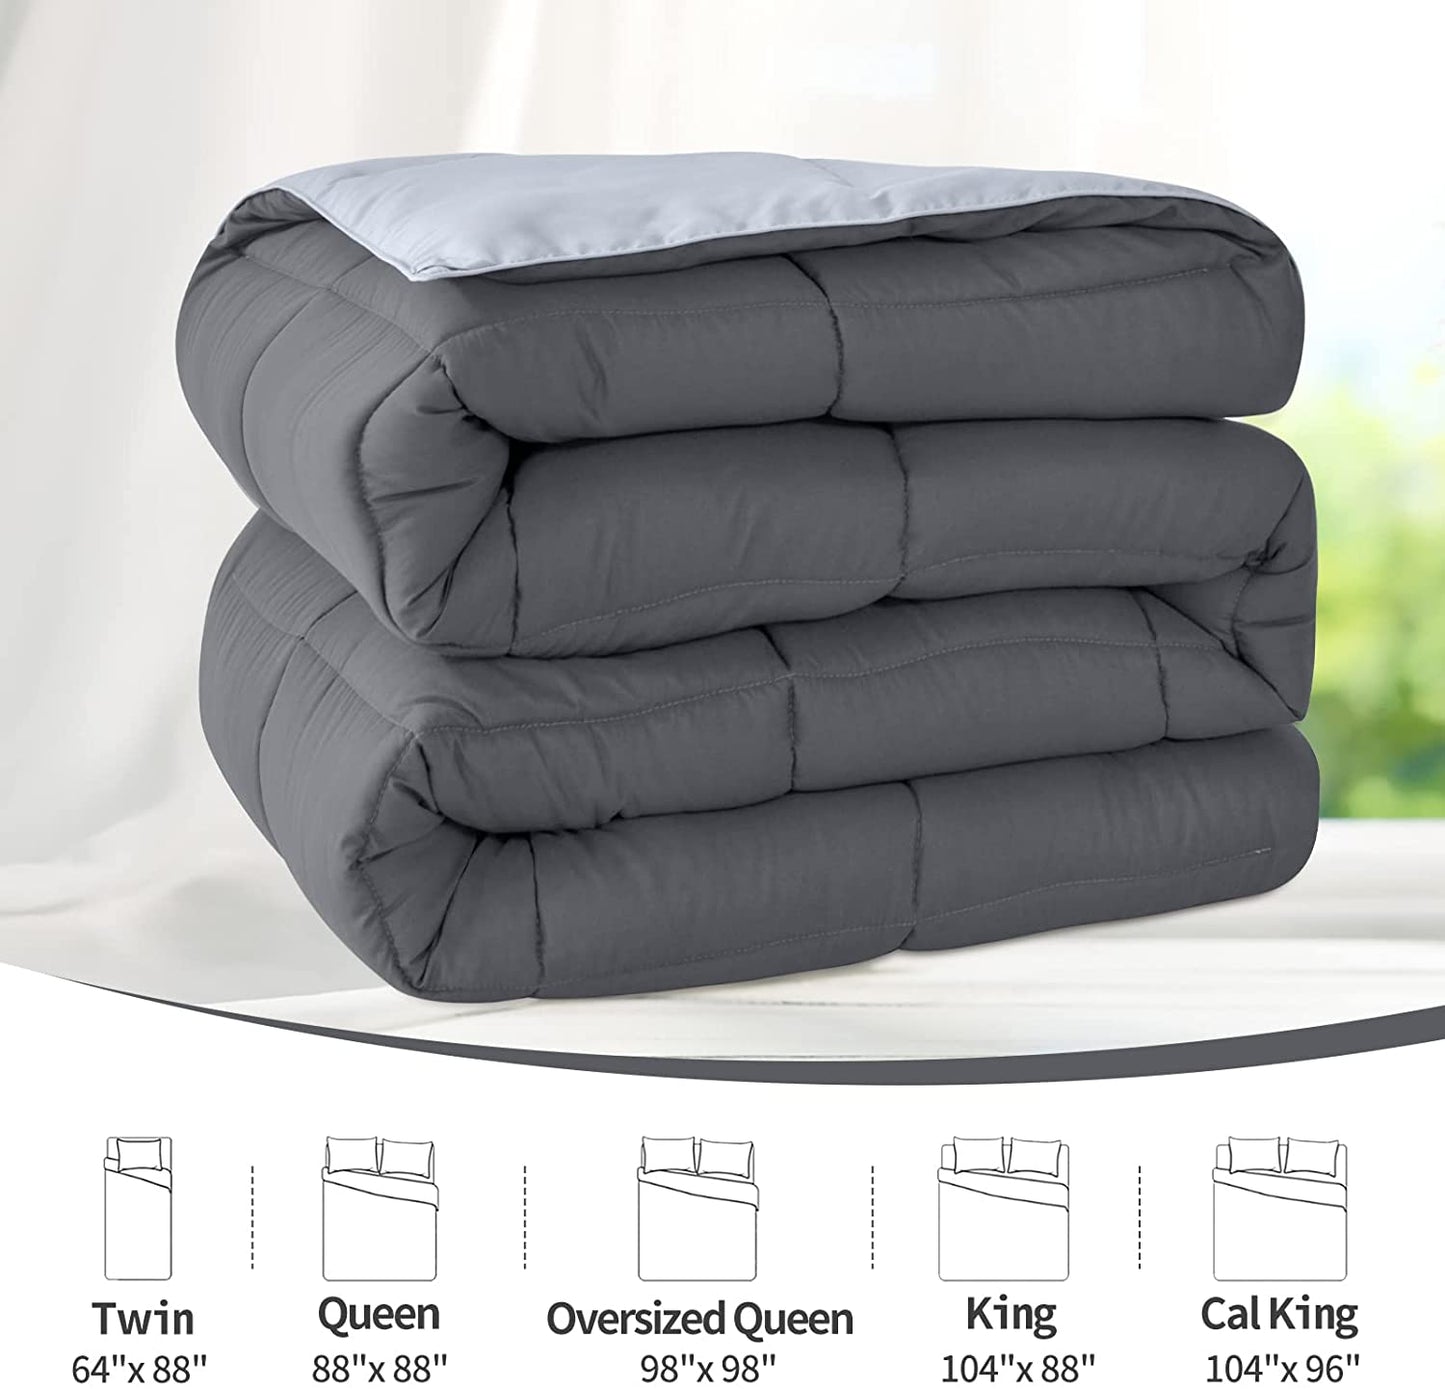 Lightweight Queen Comforter - Grey down Alternative Bedding Comforters Queen Size, All Season Duvet Insert Quilted Reversible Bed Comforter Soft Queen Full Size Dark Gray/Light Grey